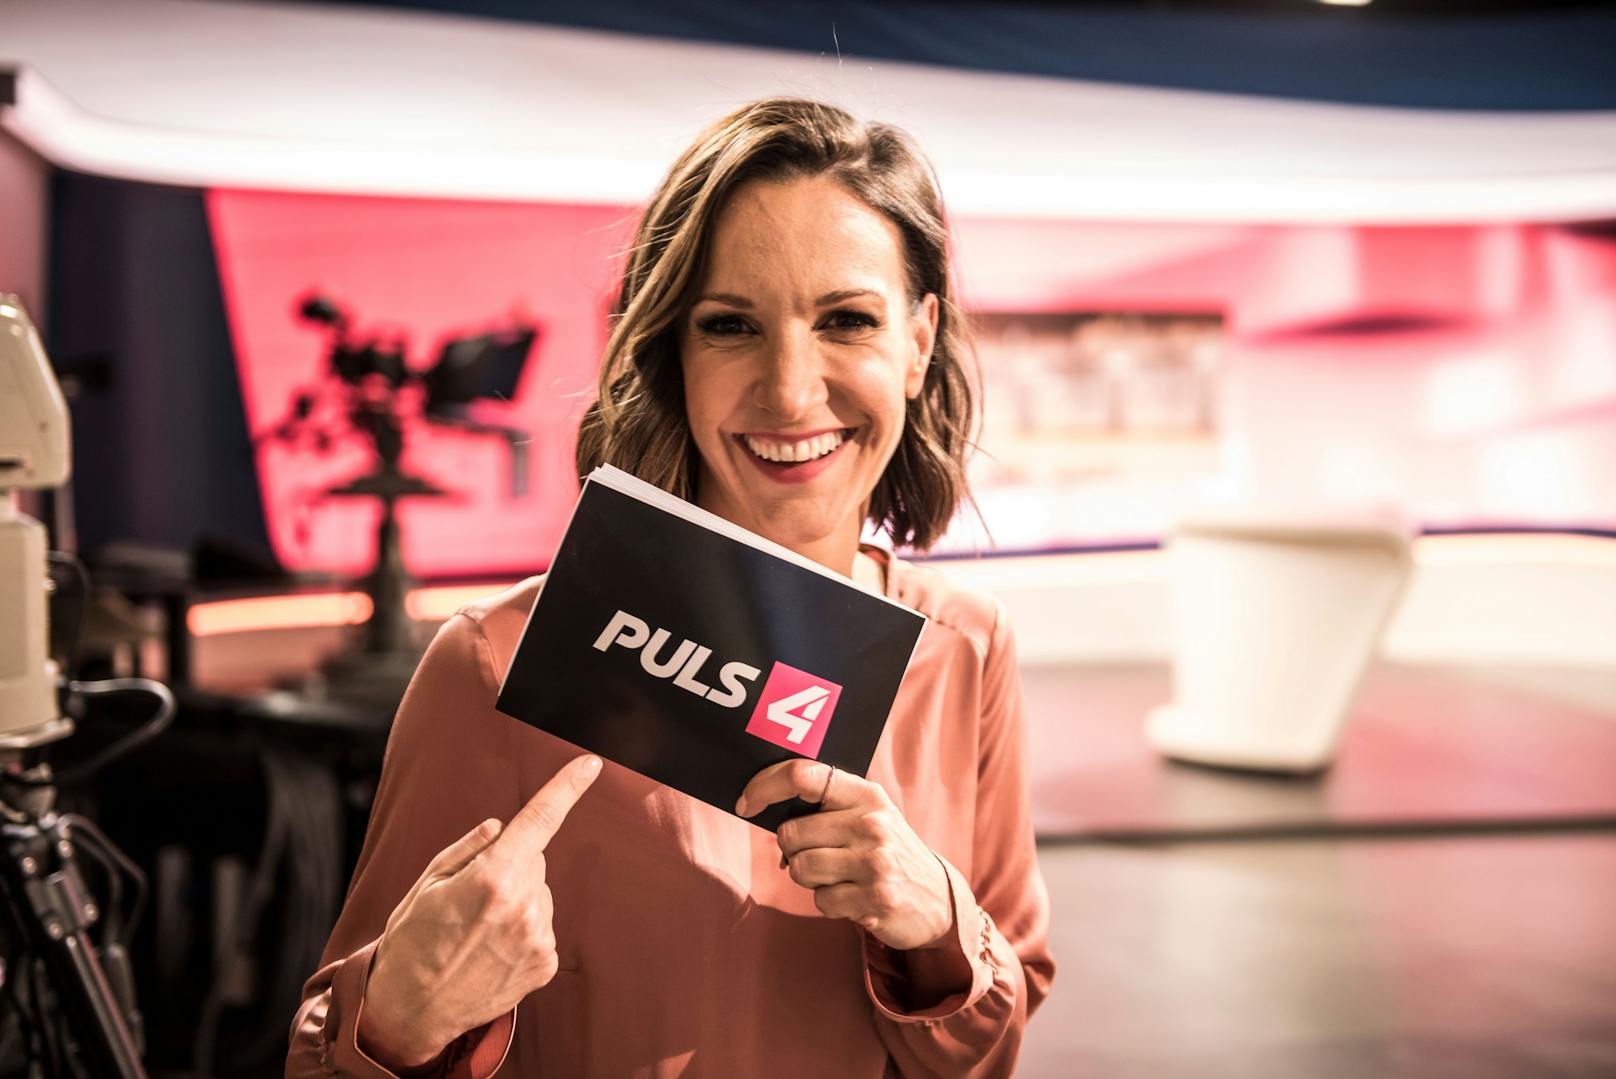 "Getrennt": "Café Puls"-Star lässt Sender hinter sich